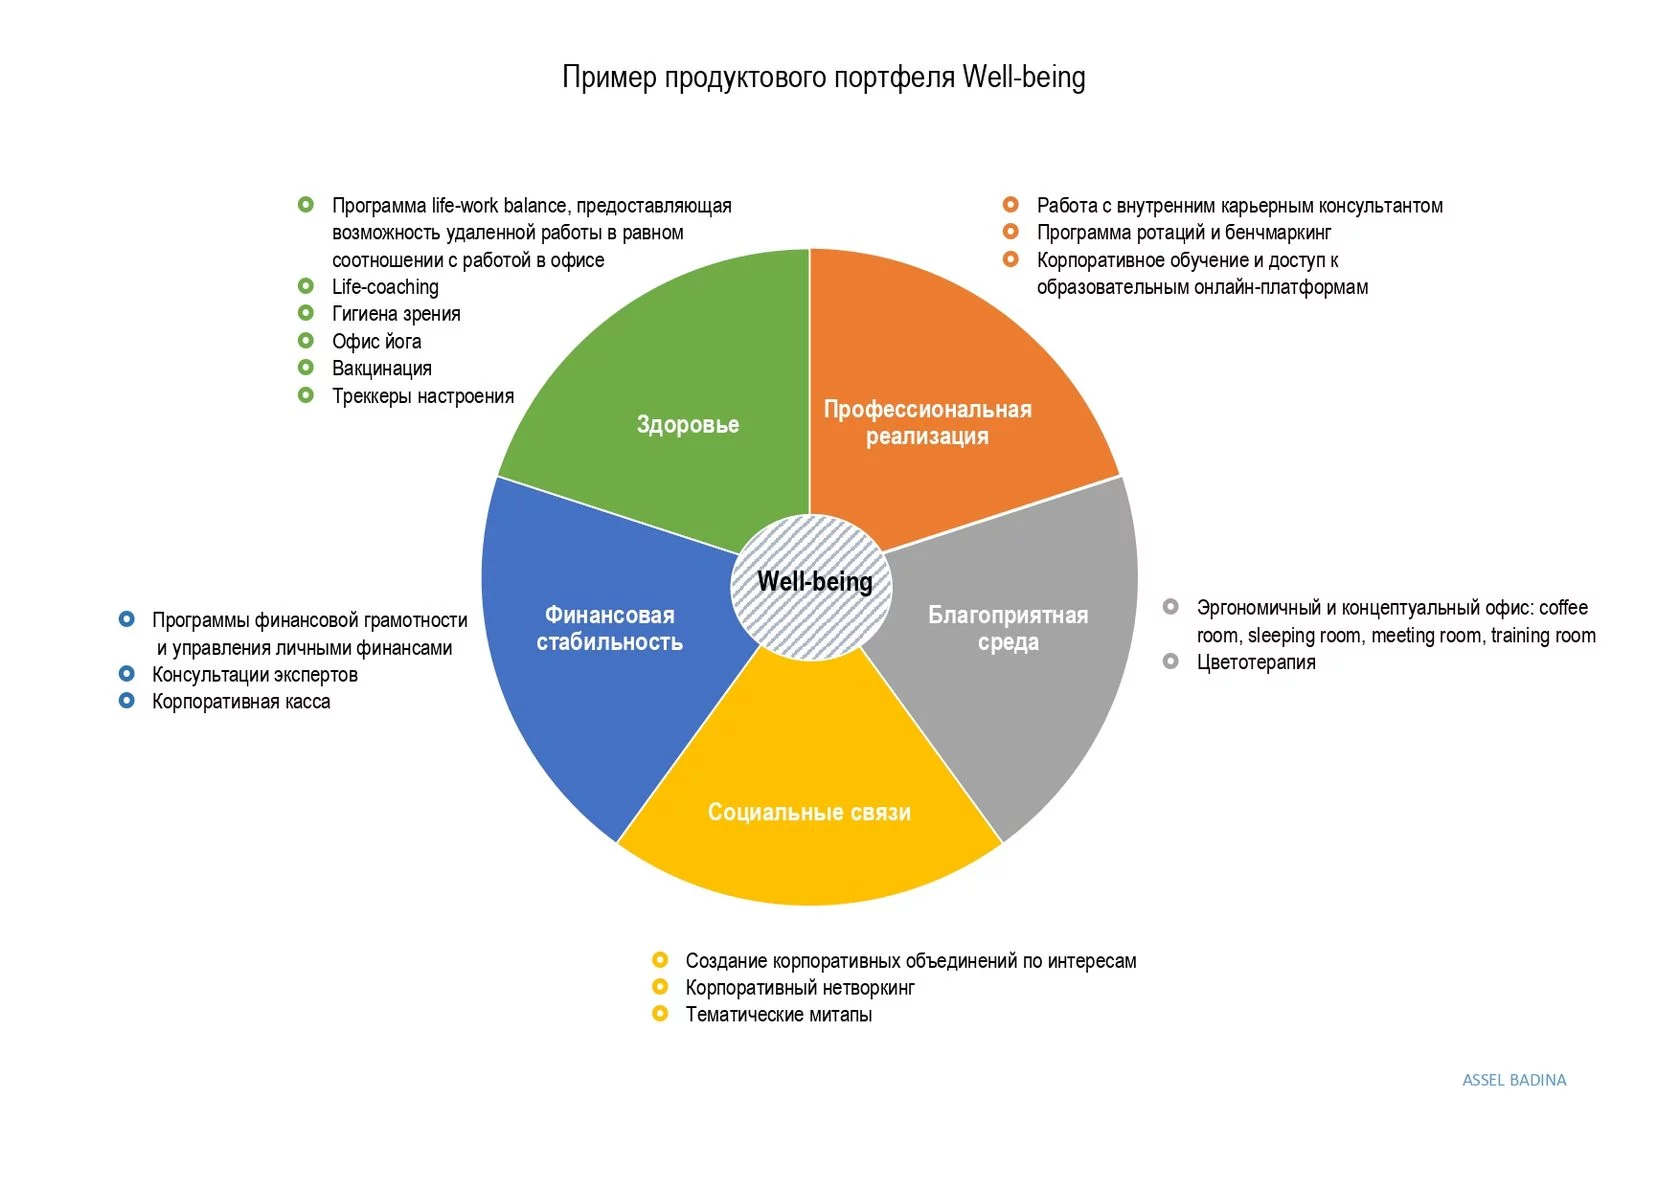 Инфографика изображает построение well-being программы для сотрудников